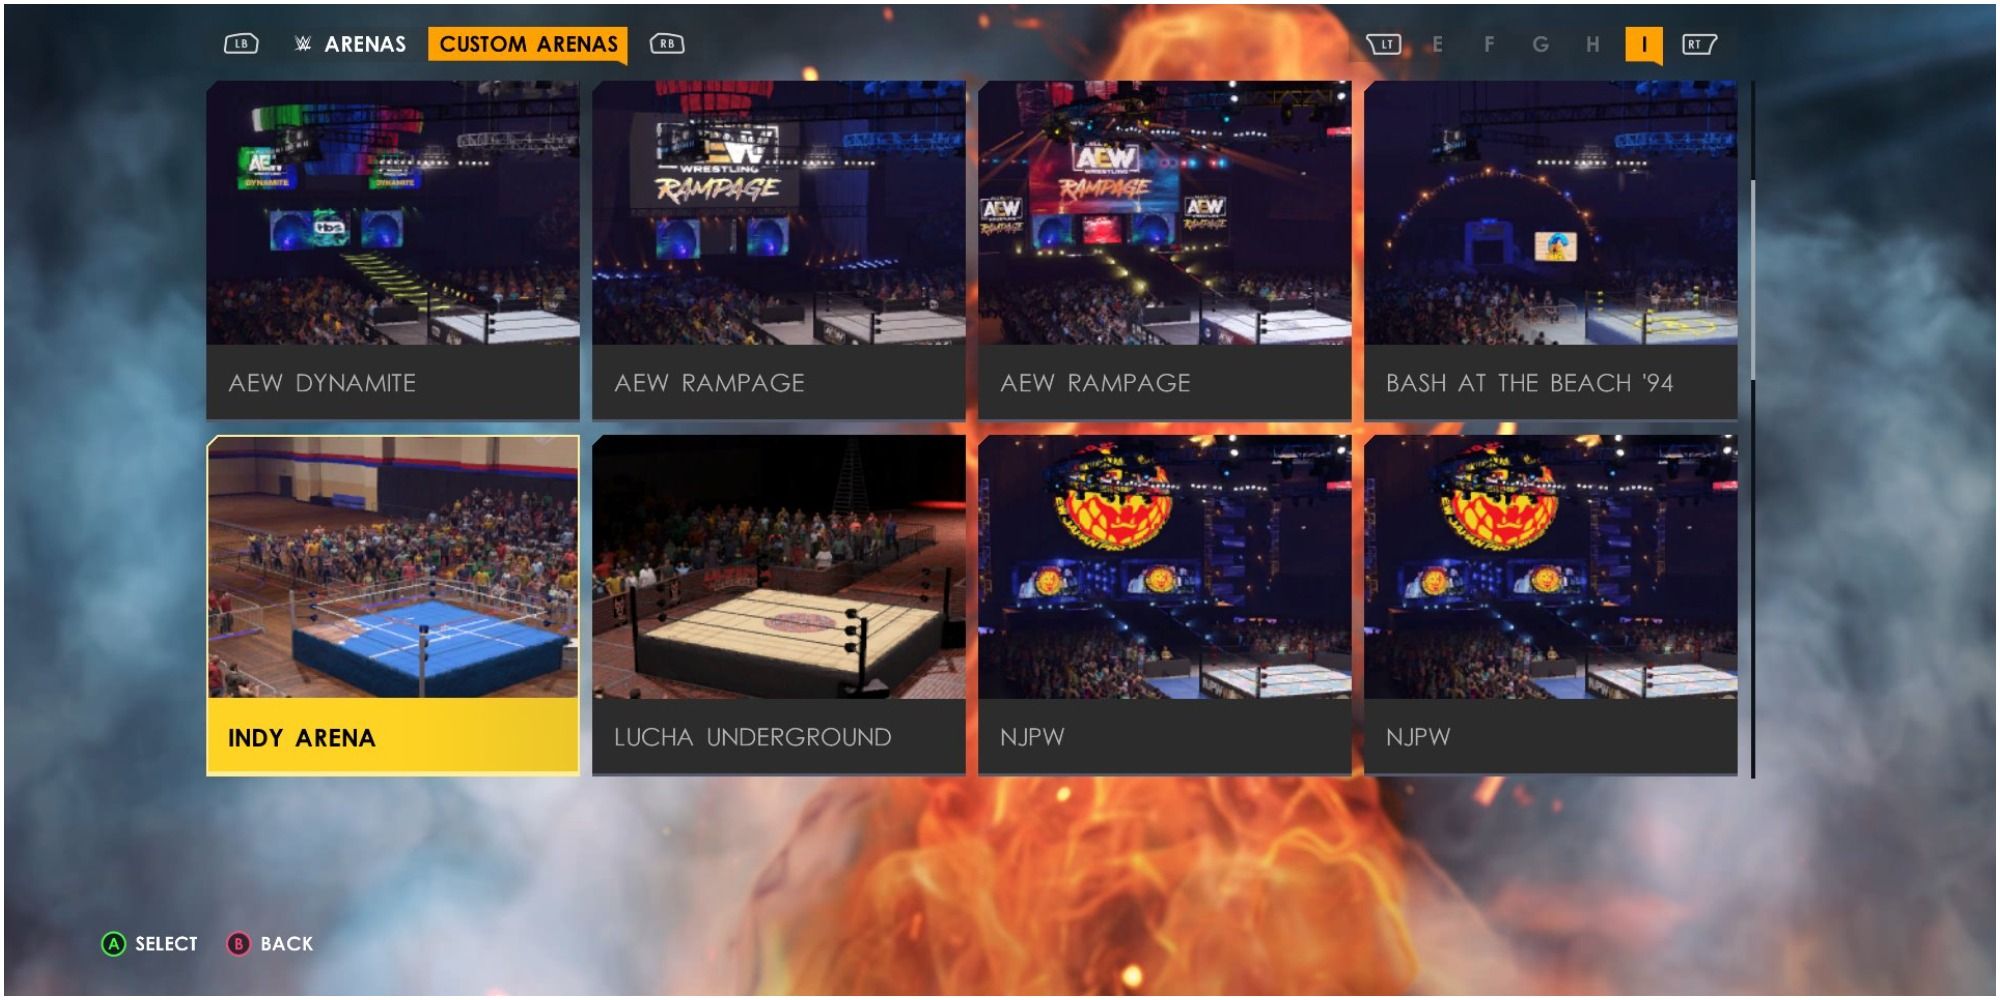 WWE 2K22 custom arenas menu